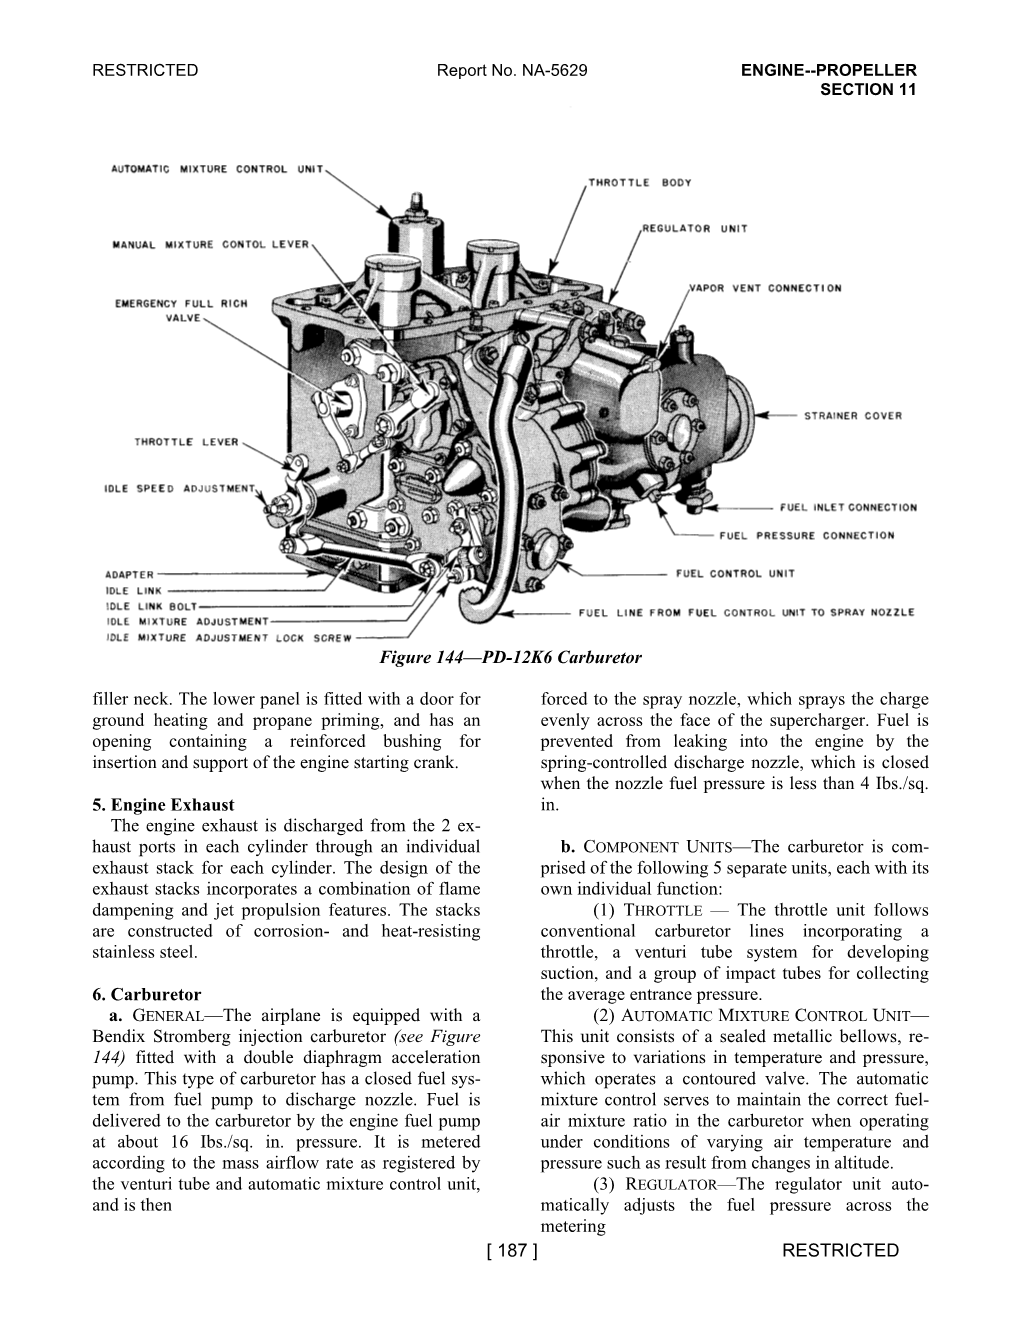 RESTRICTED Figure 144—PD-12K6 Carburetor Filler Neck. the Lower